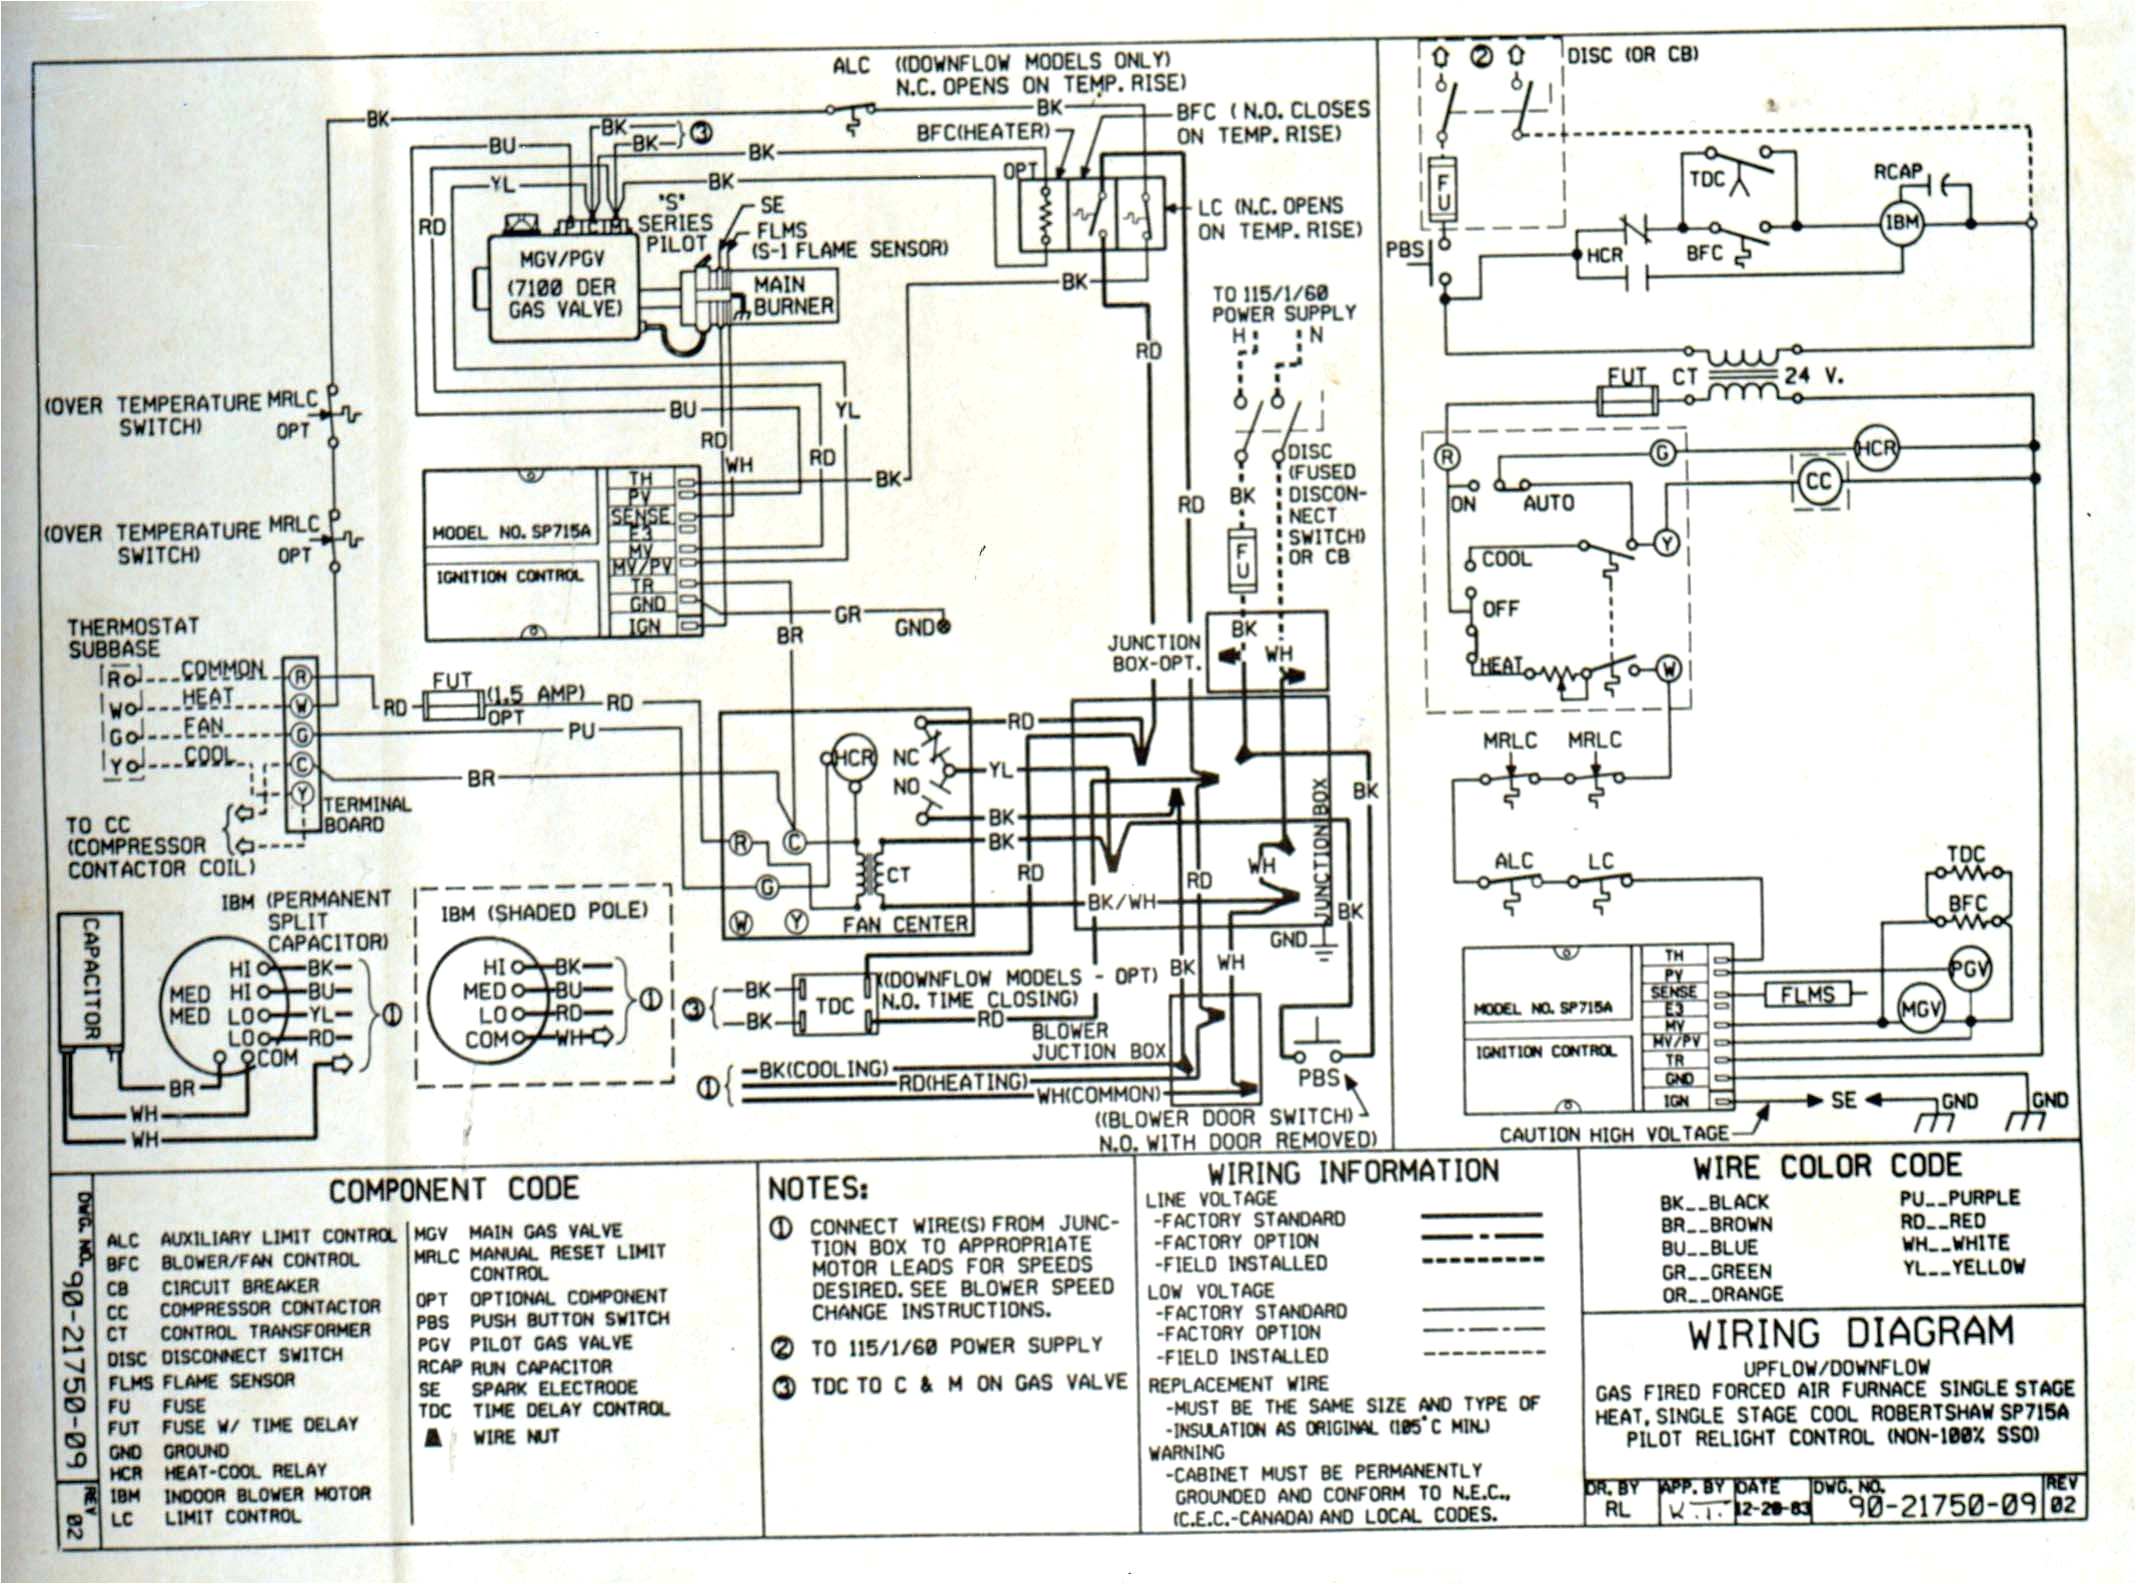 luxaire rtu wiring diagrams wiring diagram reviewluxaire furnace wiring diagram wiring diagram mega luxaire rtu wiring